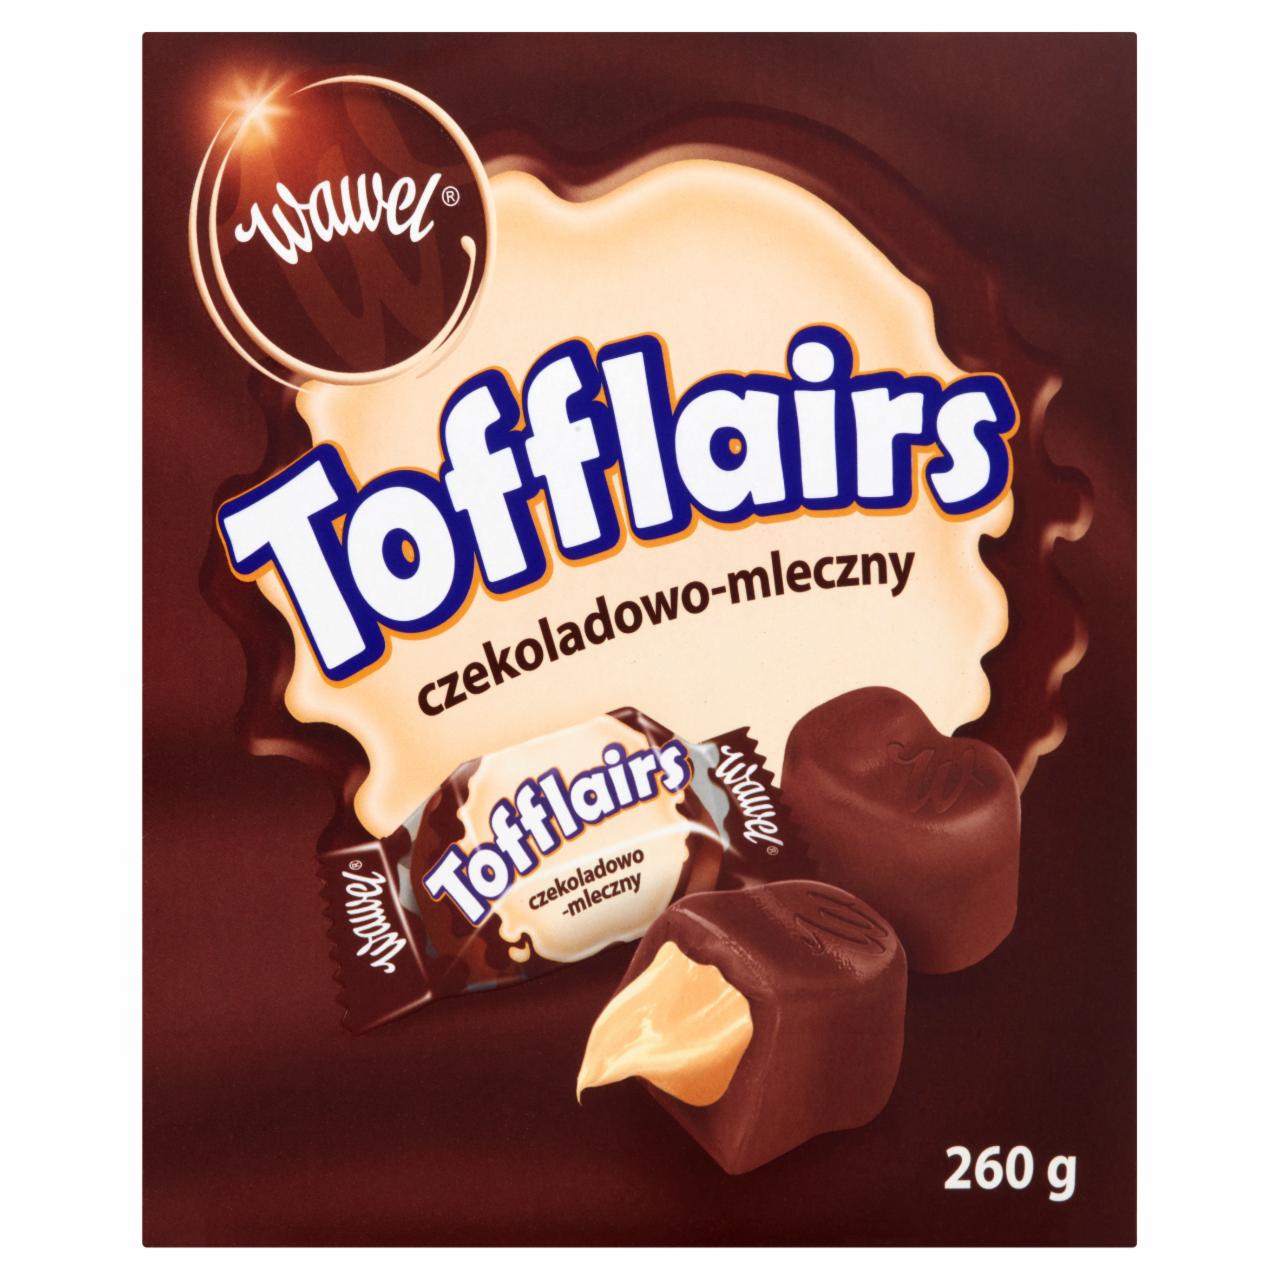 Zdjęcia - Wawel Tofflairs czekoladowo-mleczny Pomadki niekrystaliczne czekoladowe 260 g